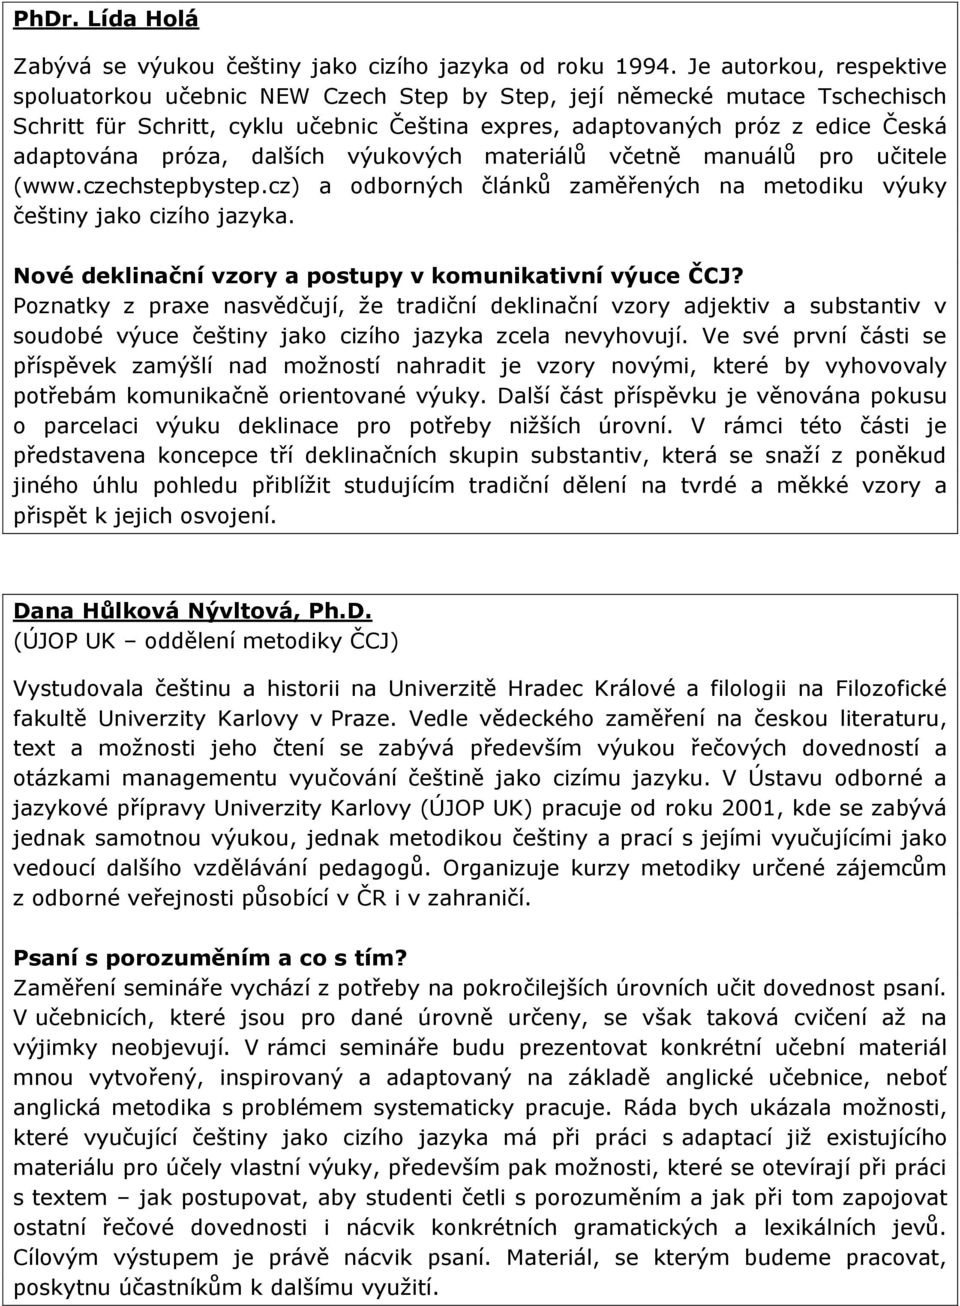 próza, dalších výukových materiálů včetně manuálů pro učitele (www.czechstepbystep.cz) a odborných článků zaměřených na metodiku výuky češtiny jako cizího jazyka.